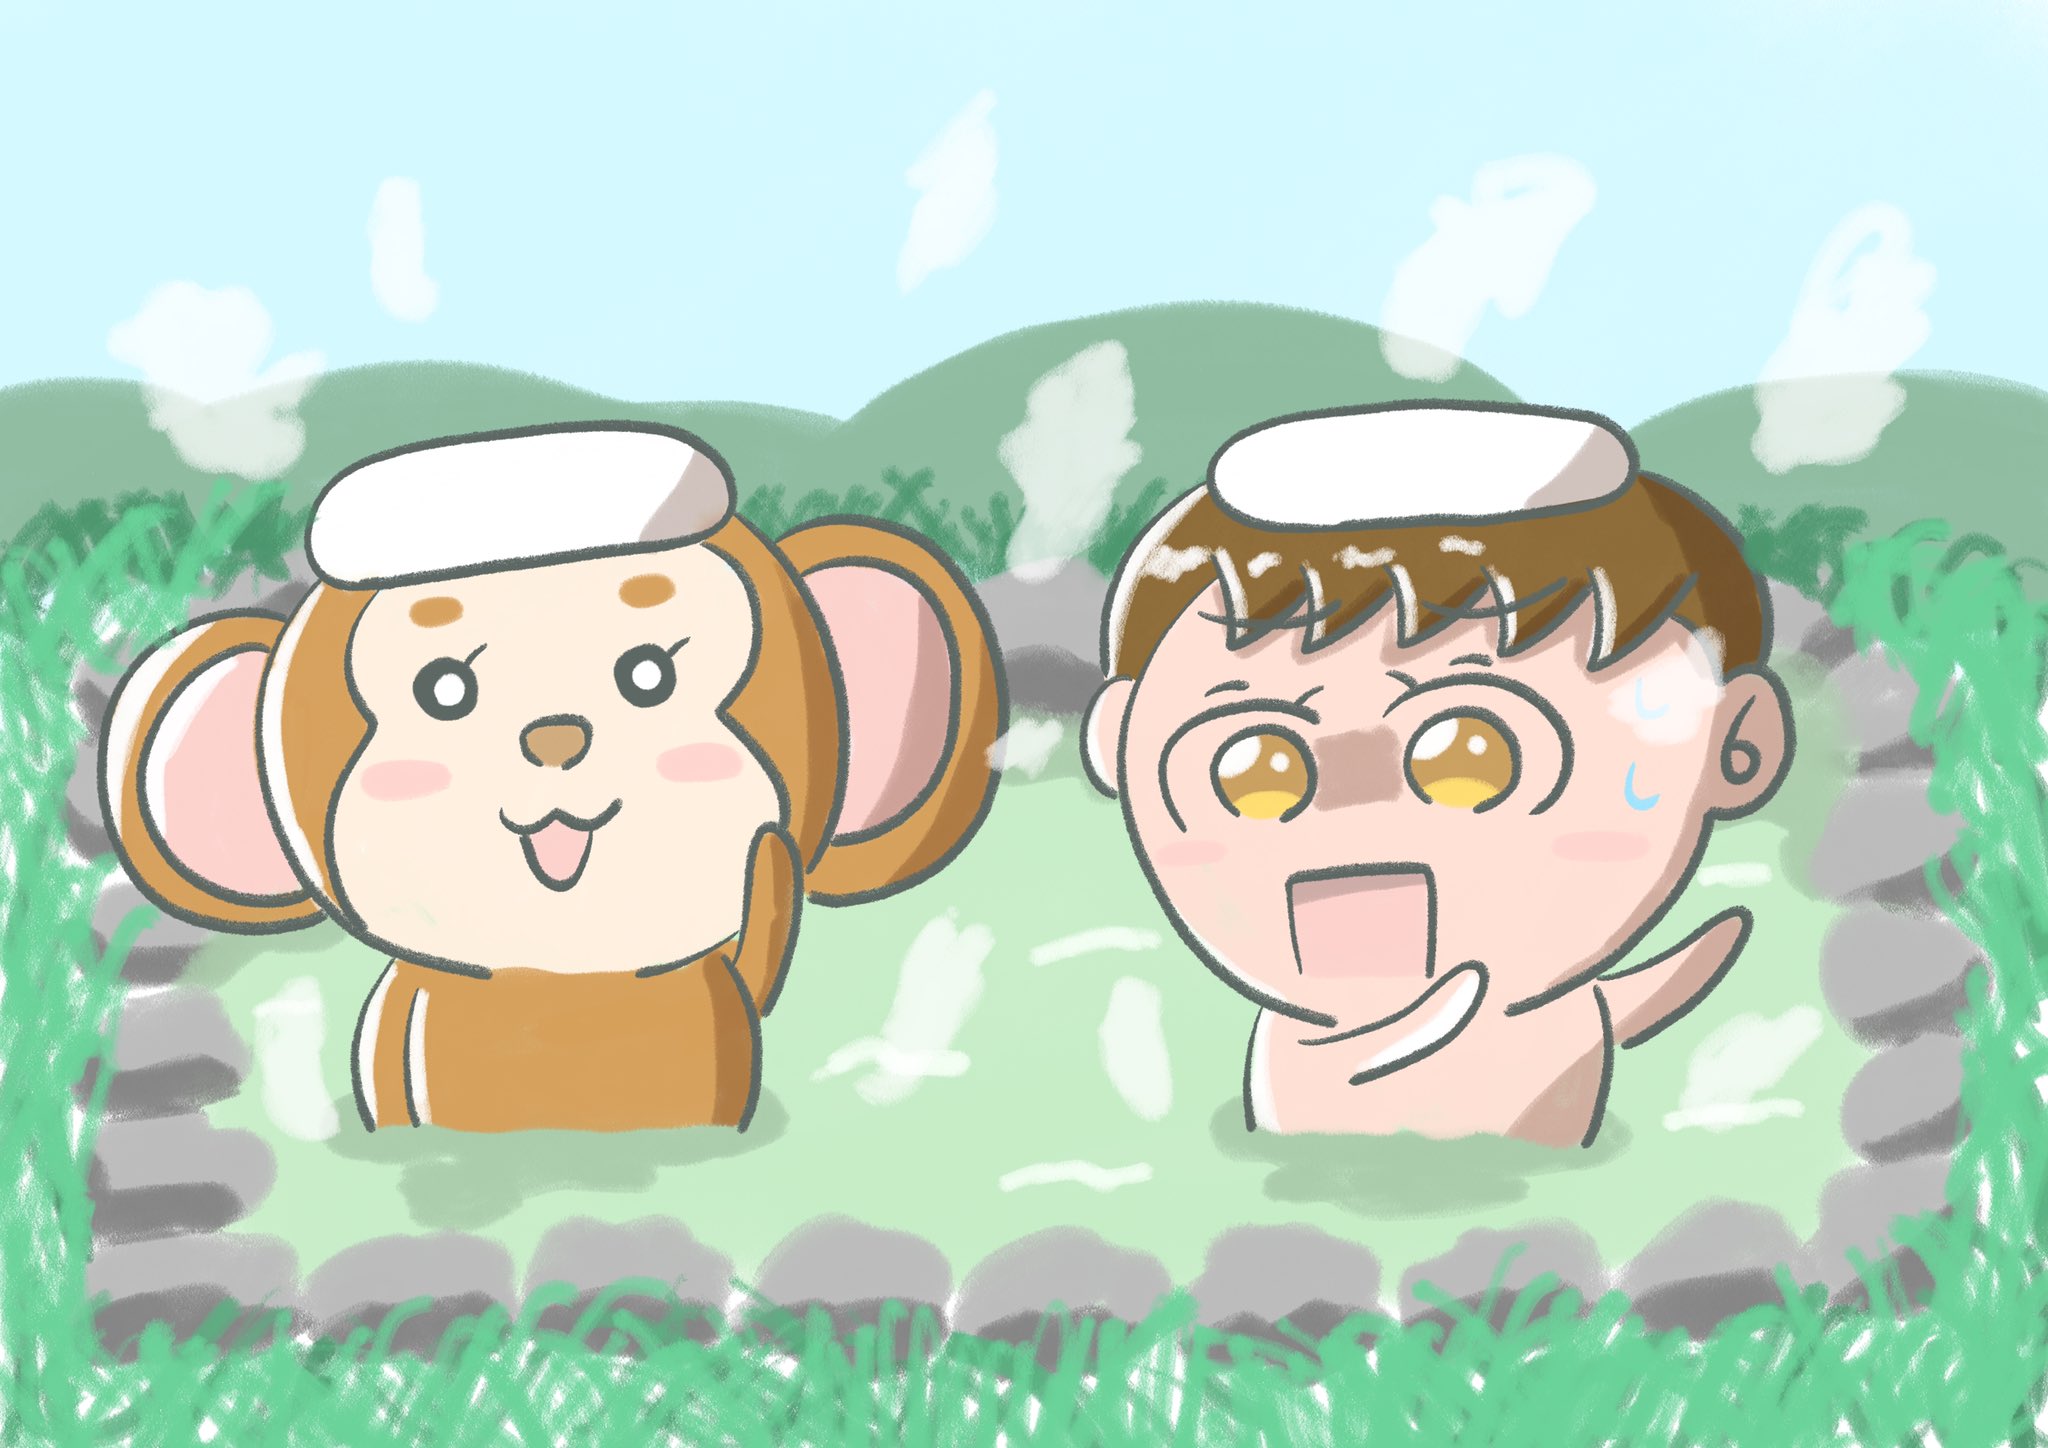 Aki かわいい子供 動物イラスト描きます 温泉で猿に遭遇した男の子 イラスト かわいいイラスト Illustration イラスト好きな人と繋がりたい 絵描きさんと繋がりたい T Co O8vedwkbak Twitter